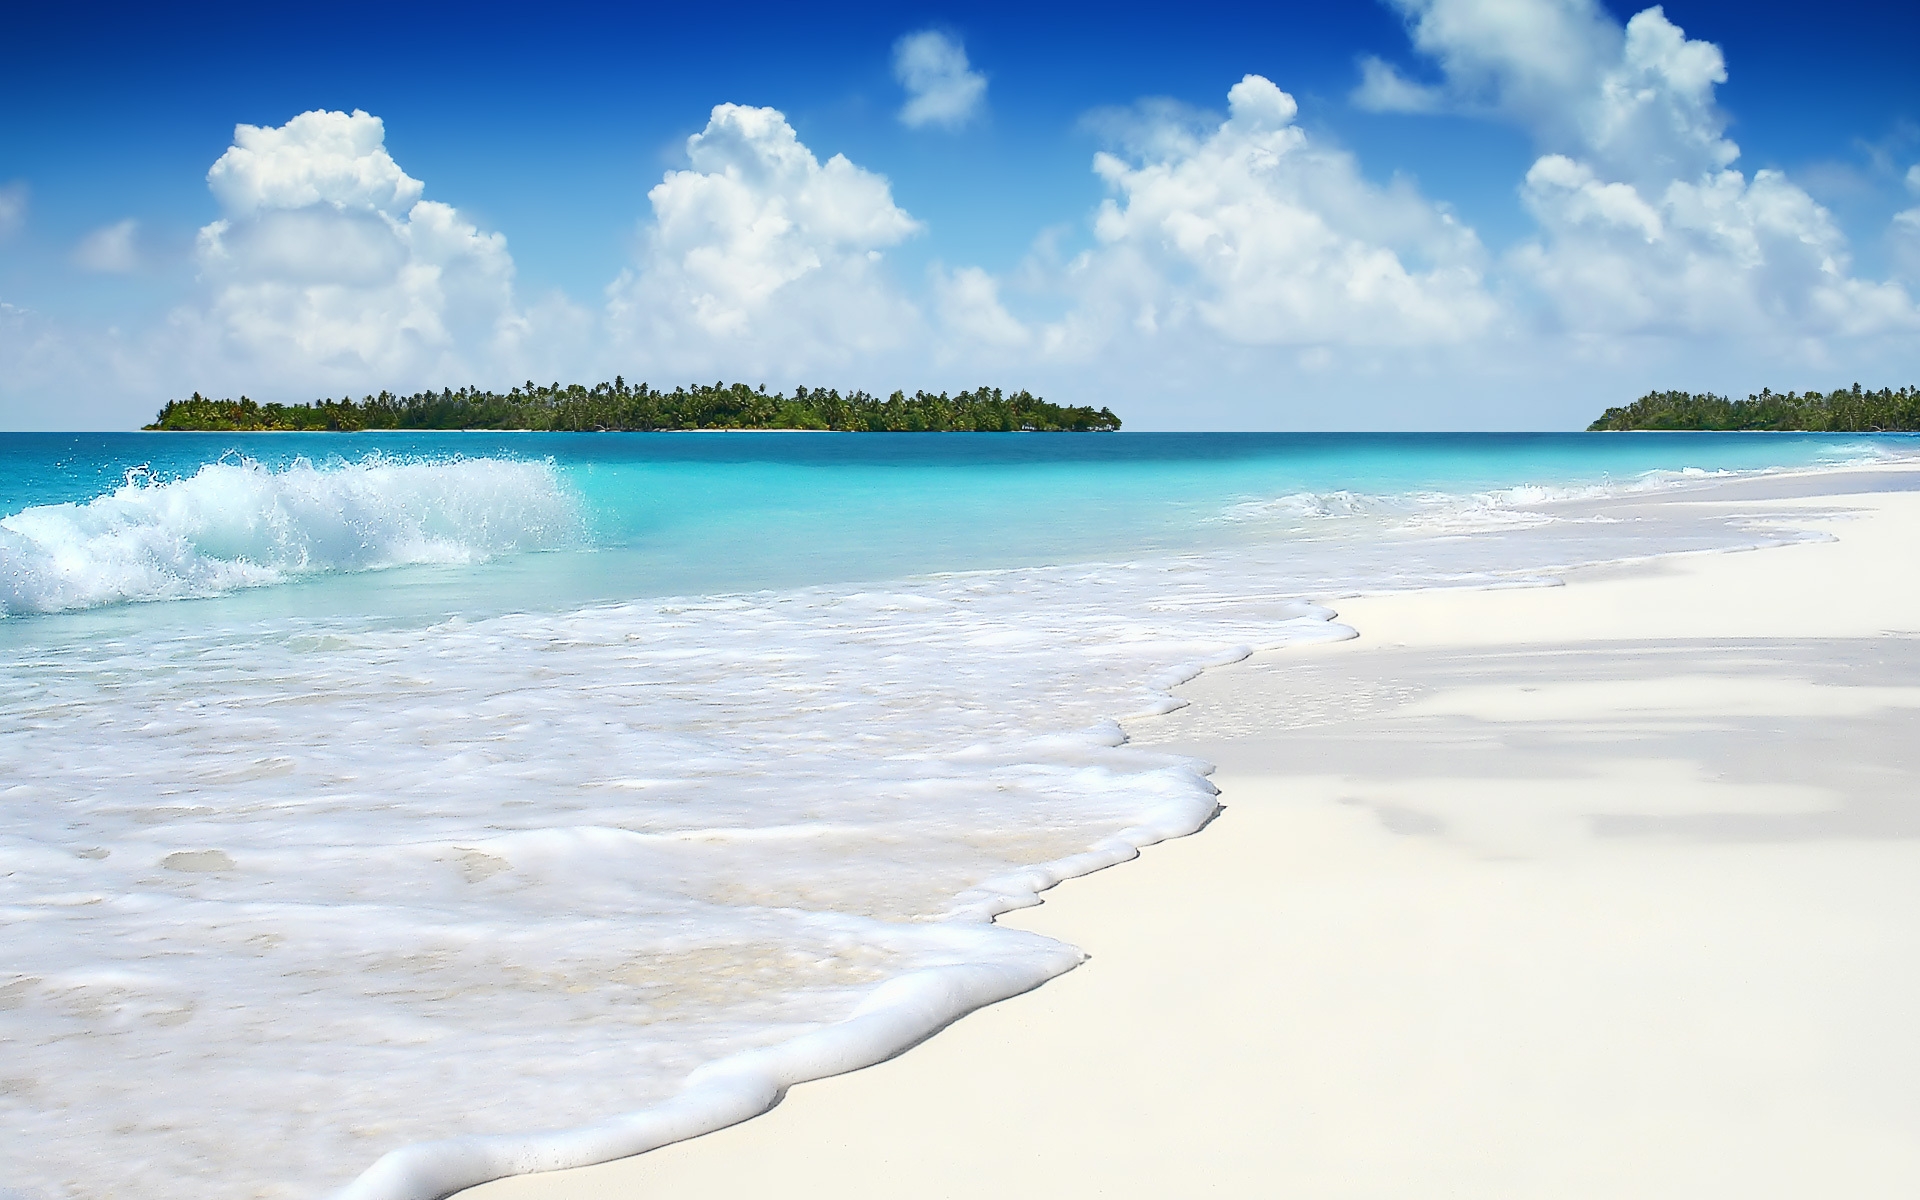 Картинки Волна, океан, острова, пальмы, побережье, пена, голубая вода, спокойствие фото и обои на рабочий стол